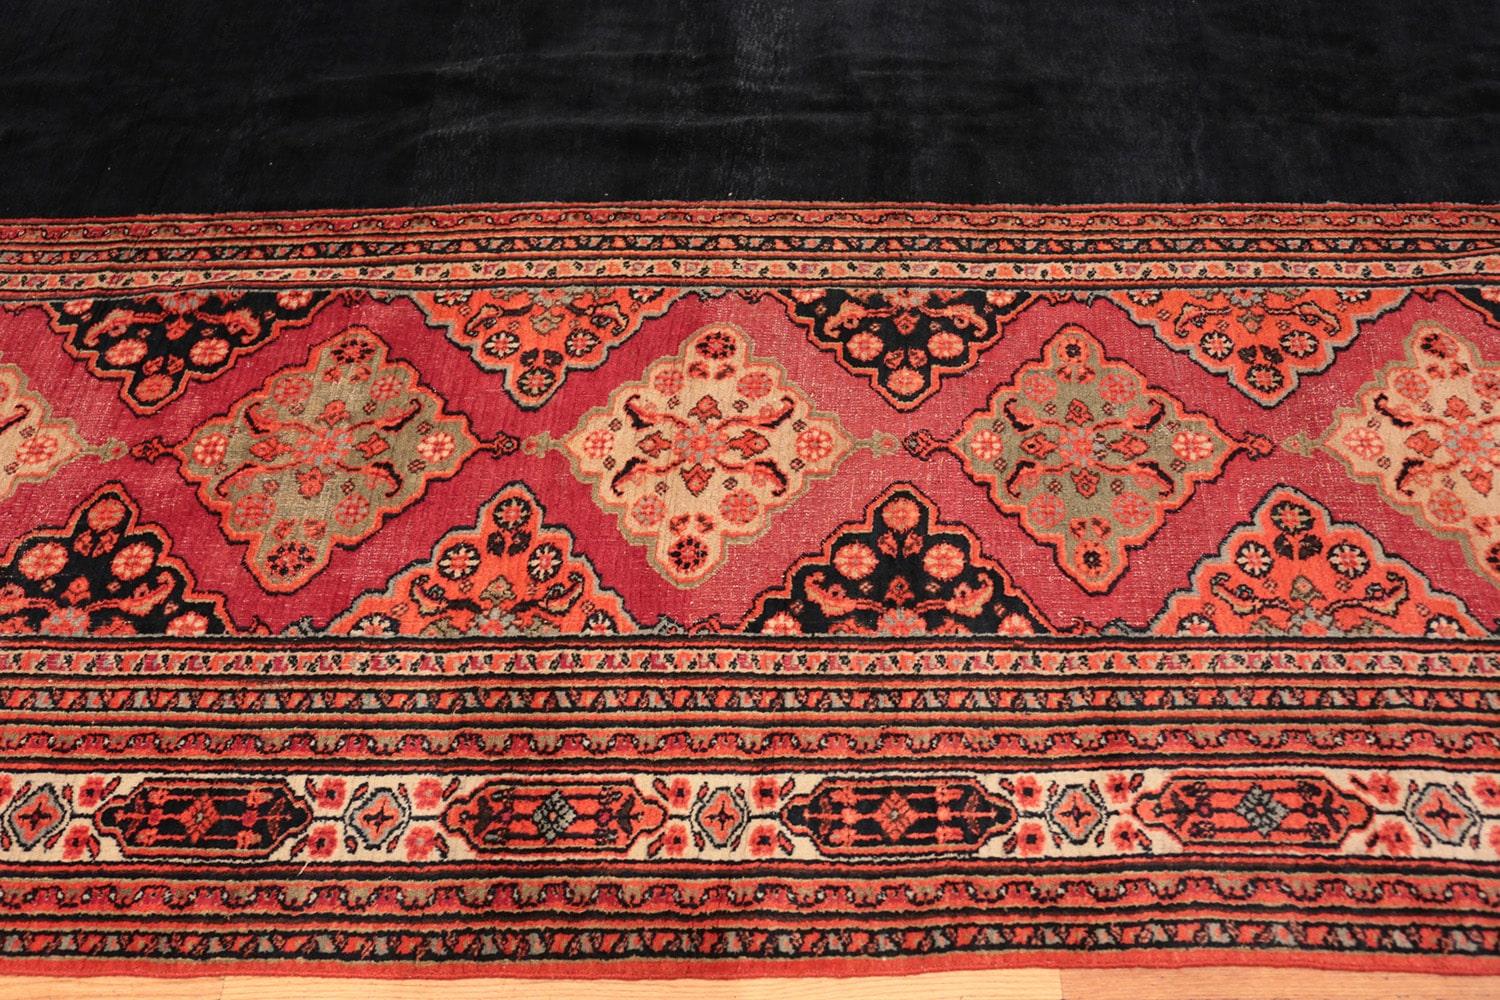 Antique Persian Khorassan Carpet. Size: 11' 9